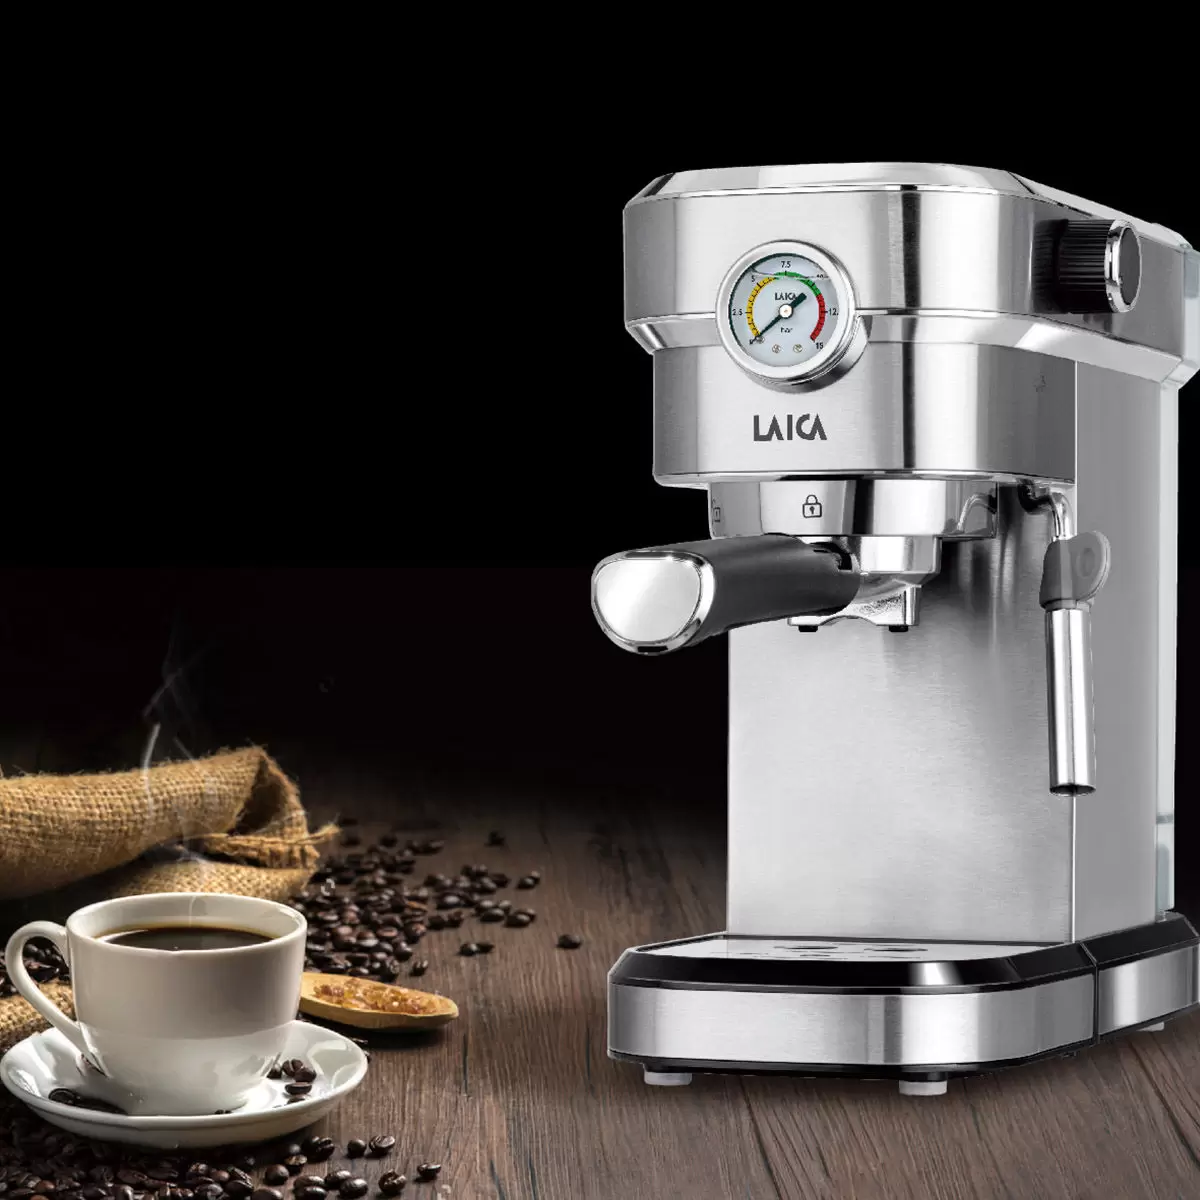 LAICA 義式濃縮咖啡機 HI8002